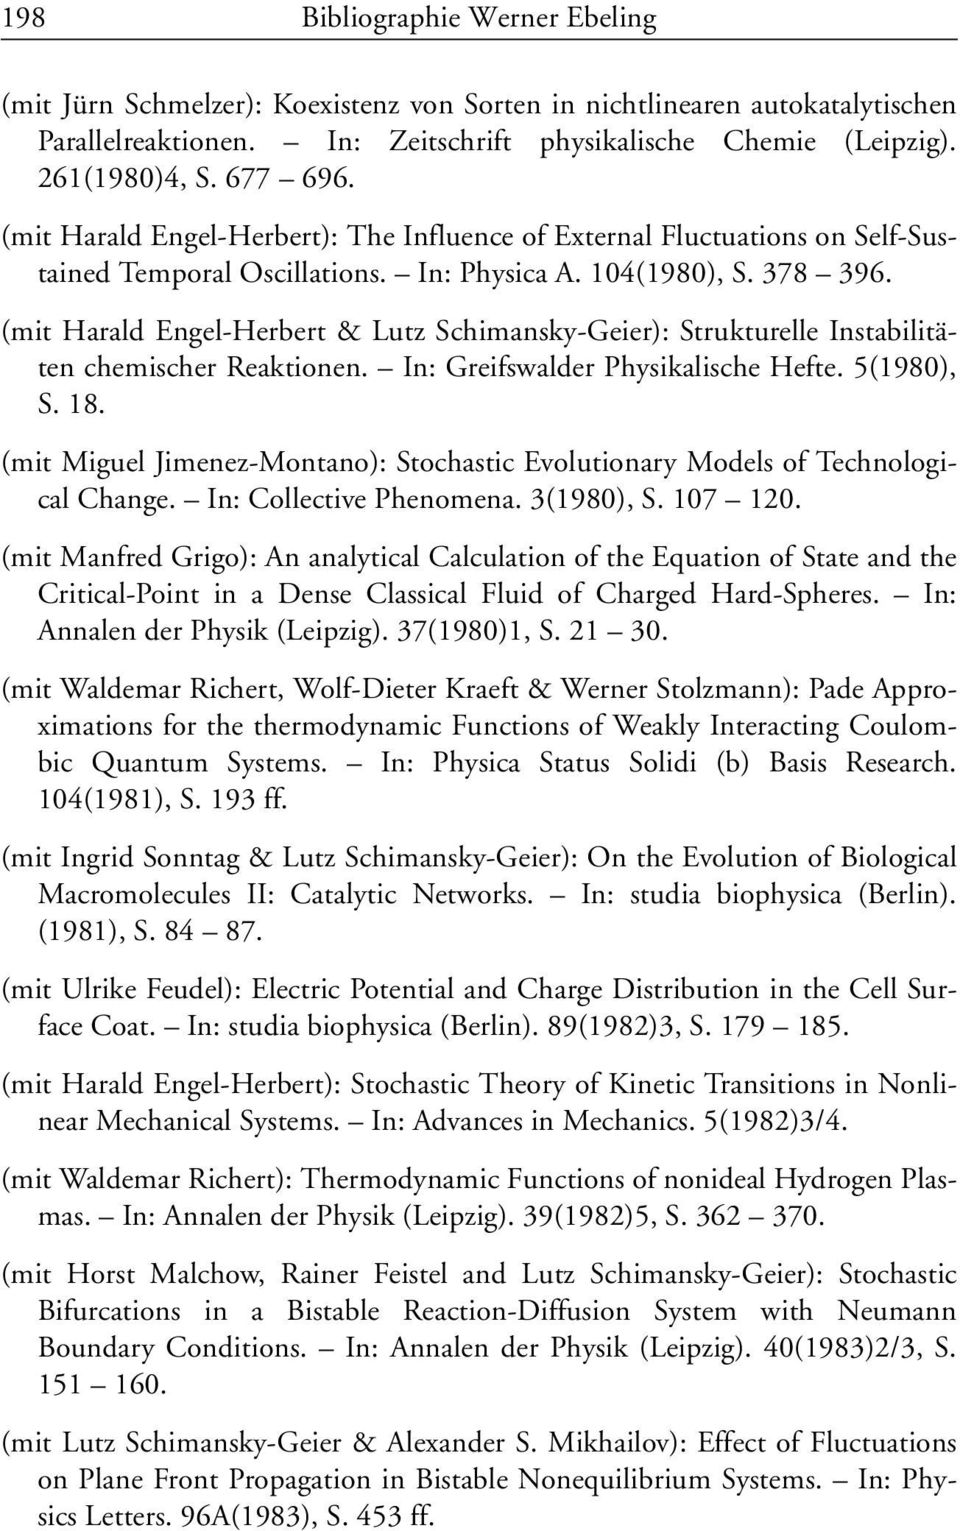 (mit Harald Engel-Herbert & Lutz Schimansky-Geier): Strukturelle Instabilitäten chemischer Reaktionen. In: Greifswalder Physikalische Hefte. 5(1980), S. 18.